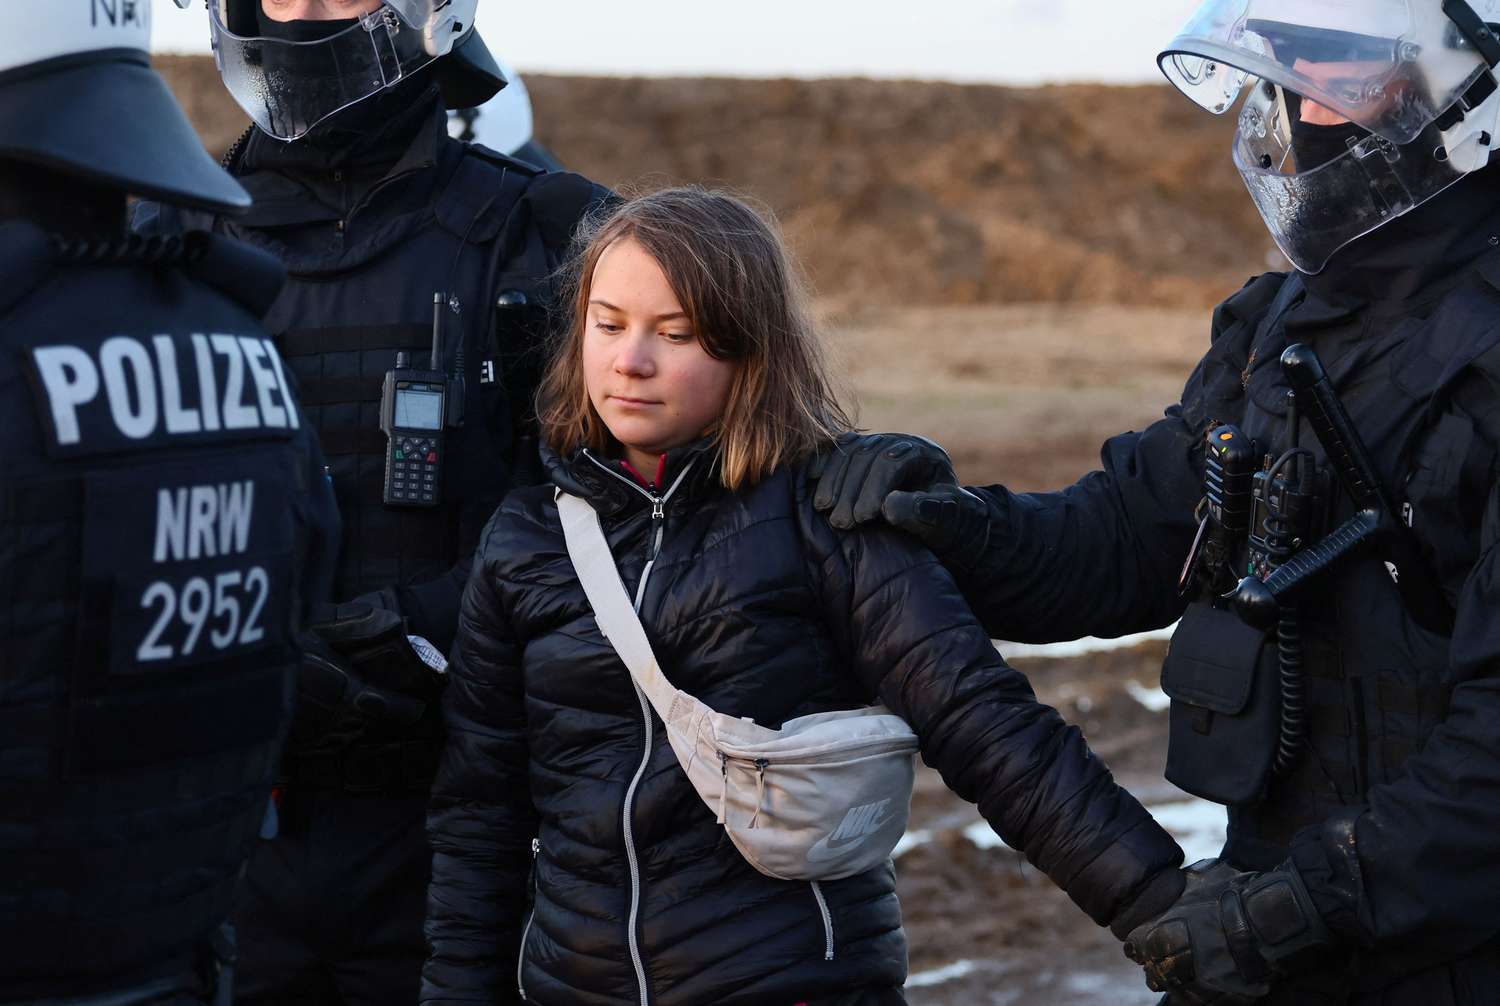 La activista sueca Greta Thunberg fue detenida tras protesta contra una mina de carbón en Alemania